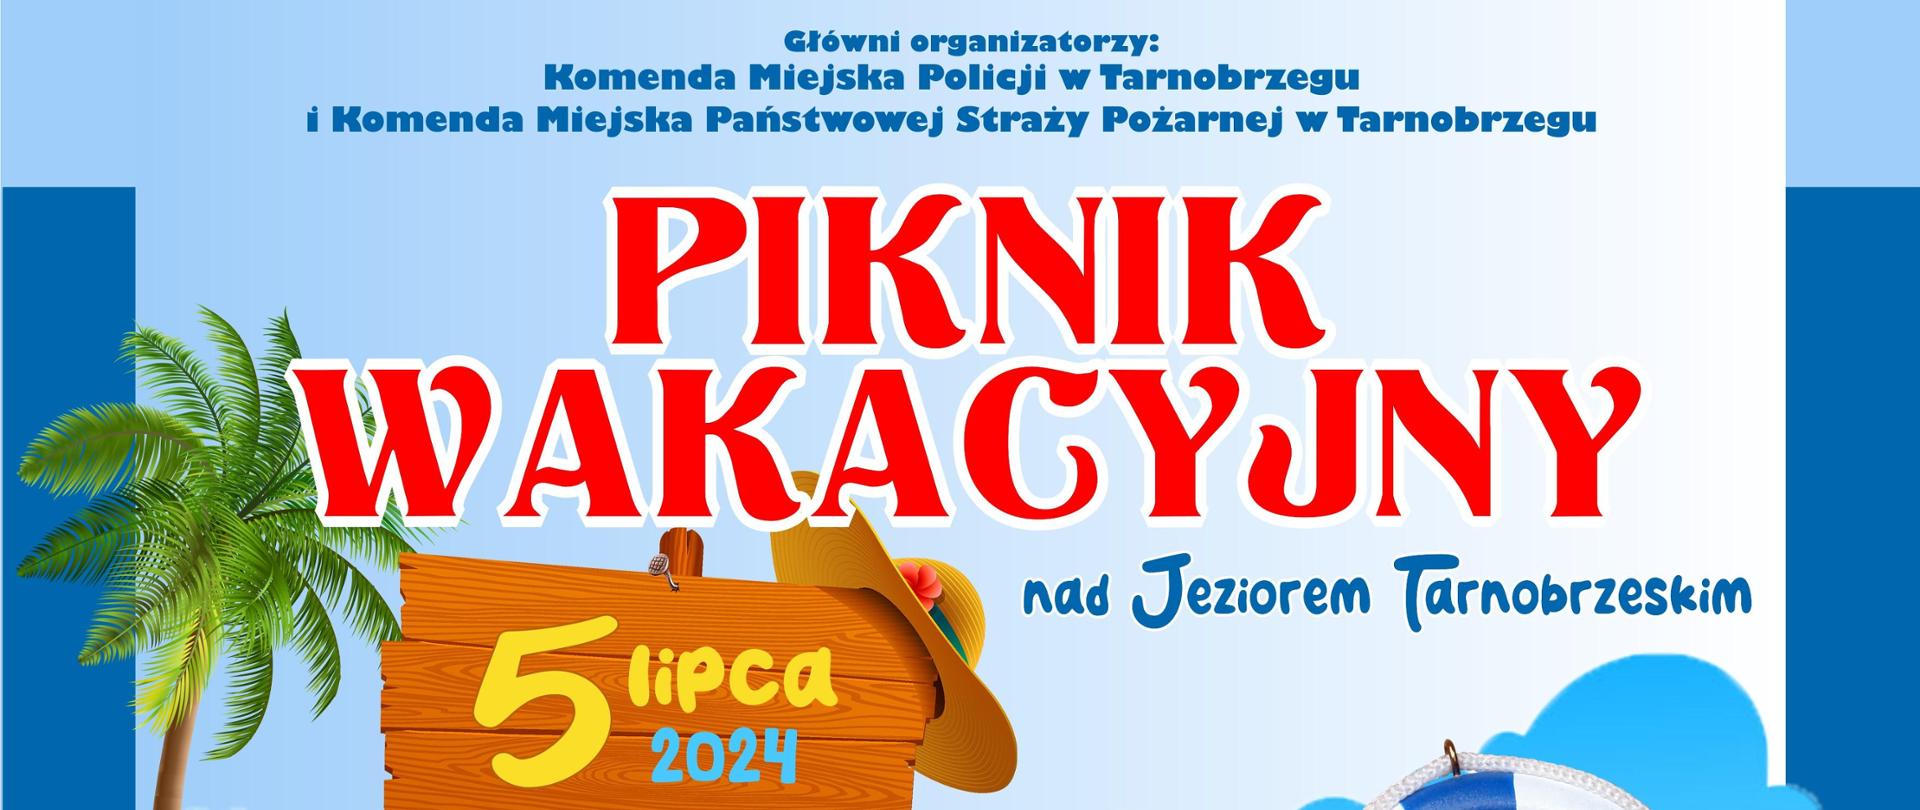 Grafika przedstawiająca informacje dotyczące pikniku wakacyjnego nad Jeziorem Tarnobrzeskim